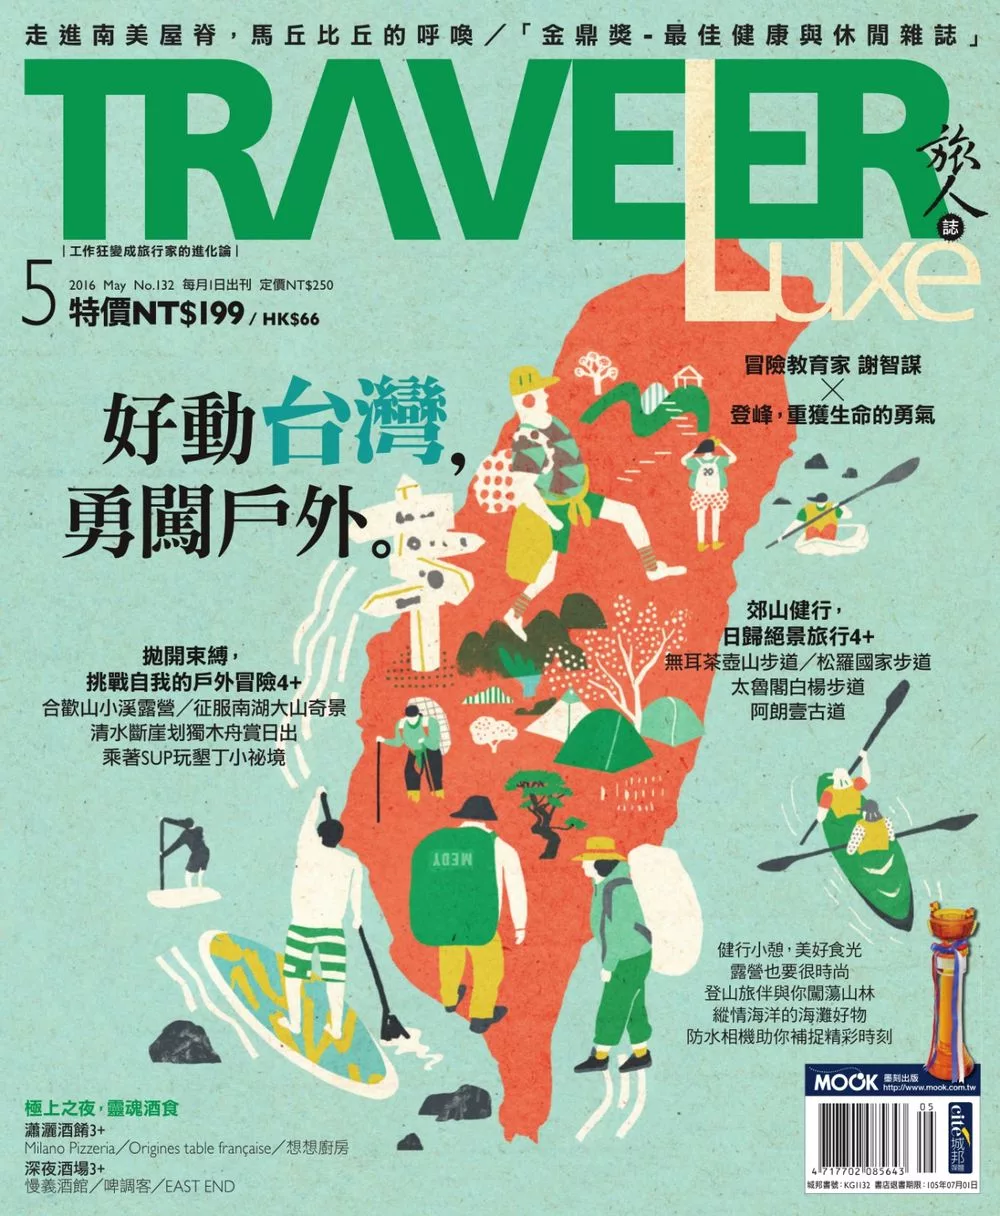 TRAVELER LUXE 旅人誌 05月號/2016第132期 (電子雜誌)